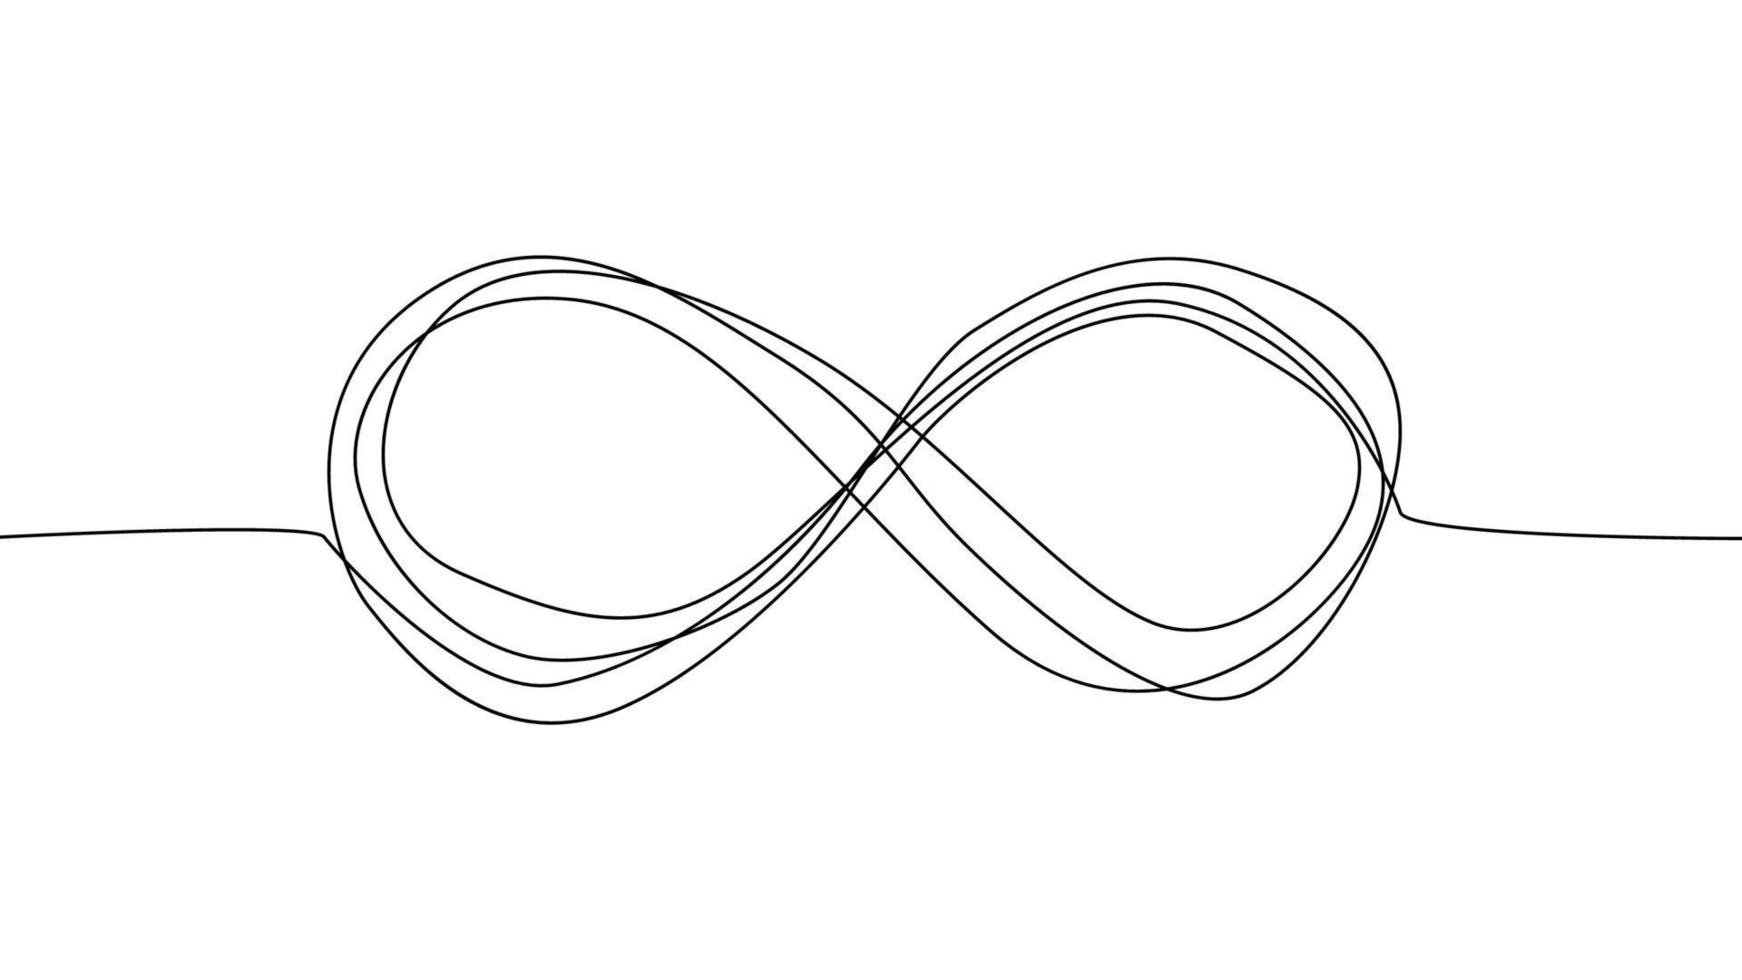 símbolo de la eternidad infinita en variaciones de diseño con estilo de garabato dibujado a mano vector